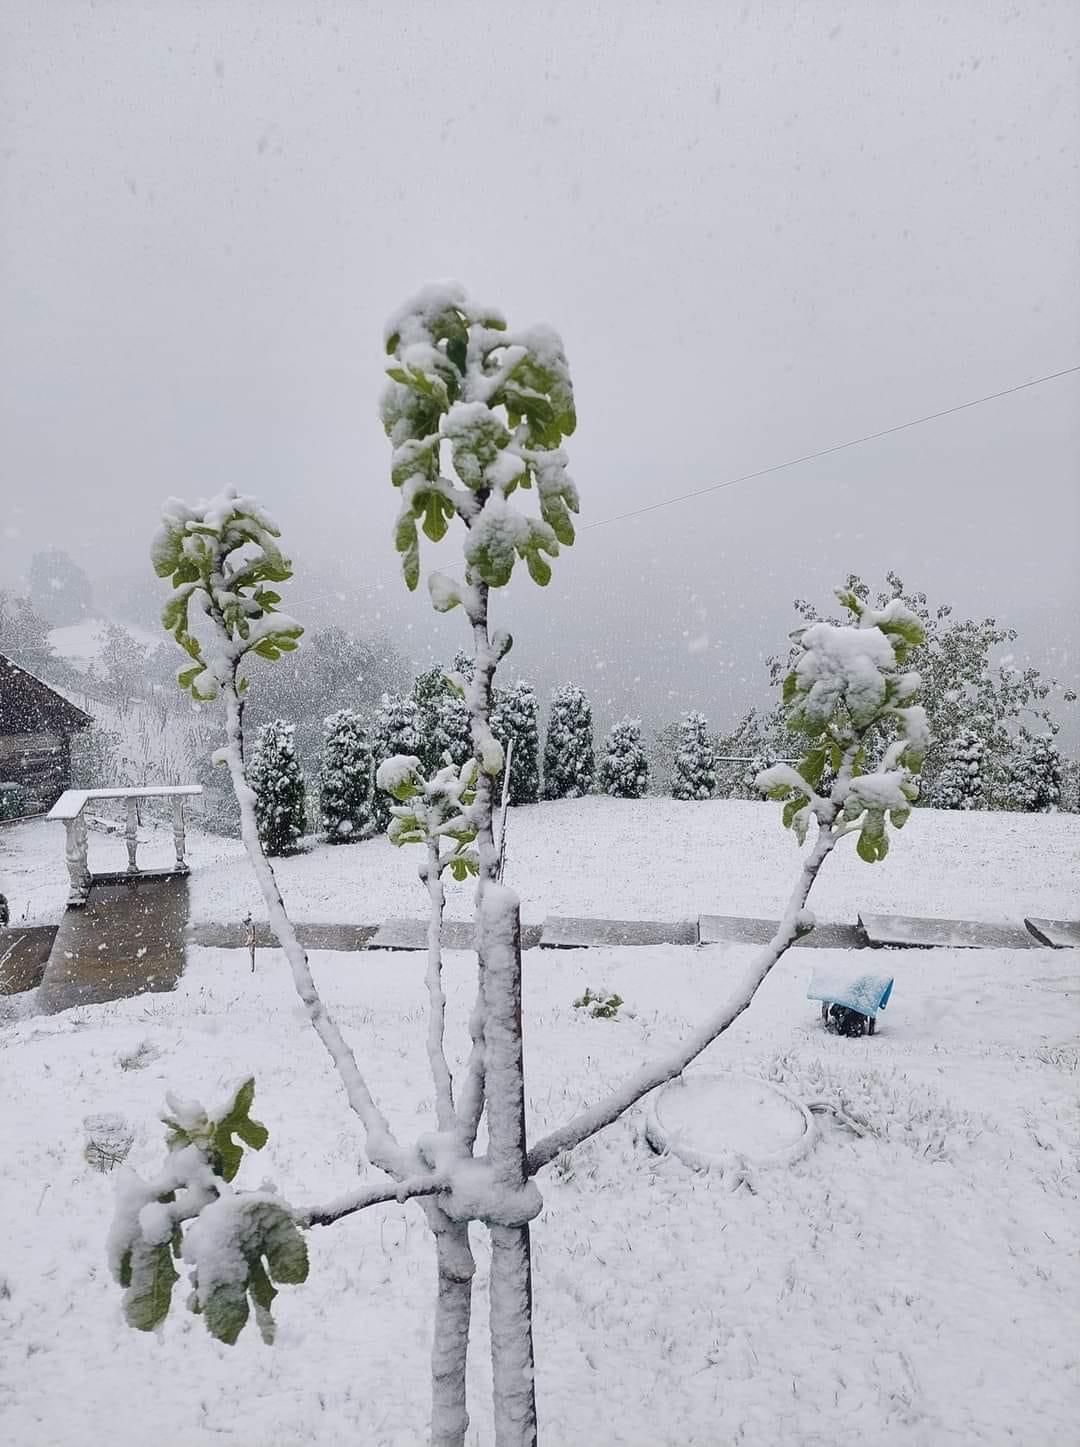 Dje ishte 30 gradë celsius  sot bie borë në Kroaci dhe Slloveni